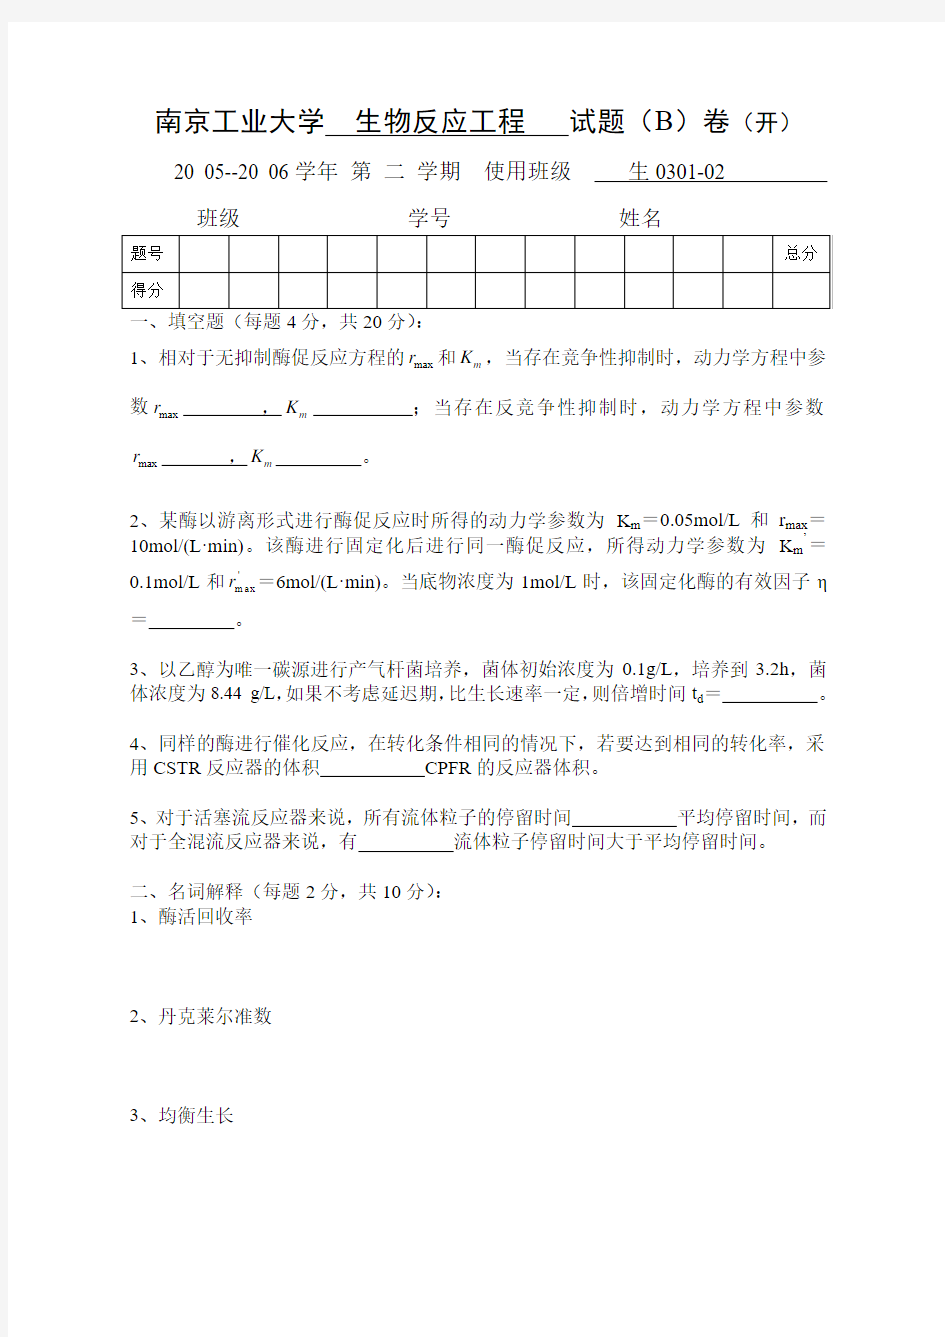 南京工业大学生物反应工程试卷(b)